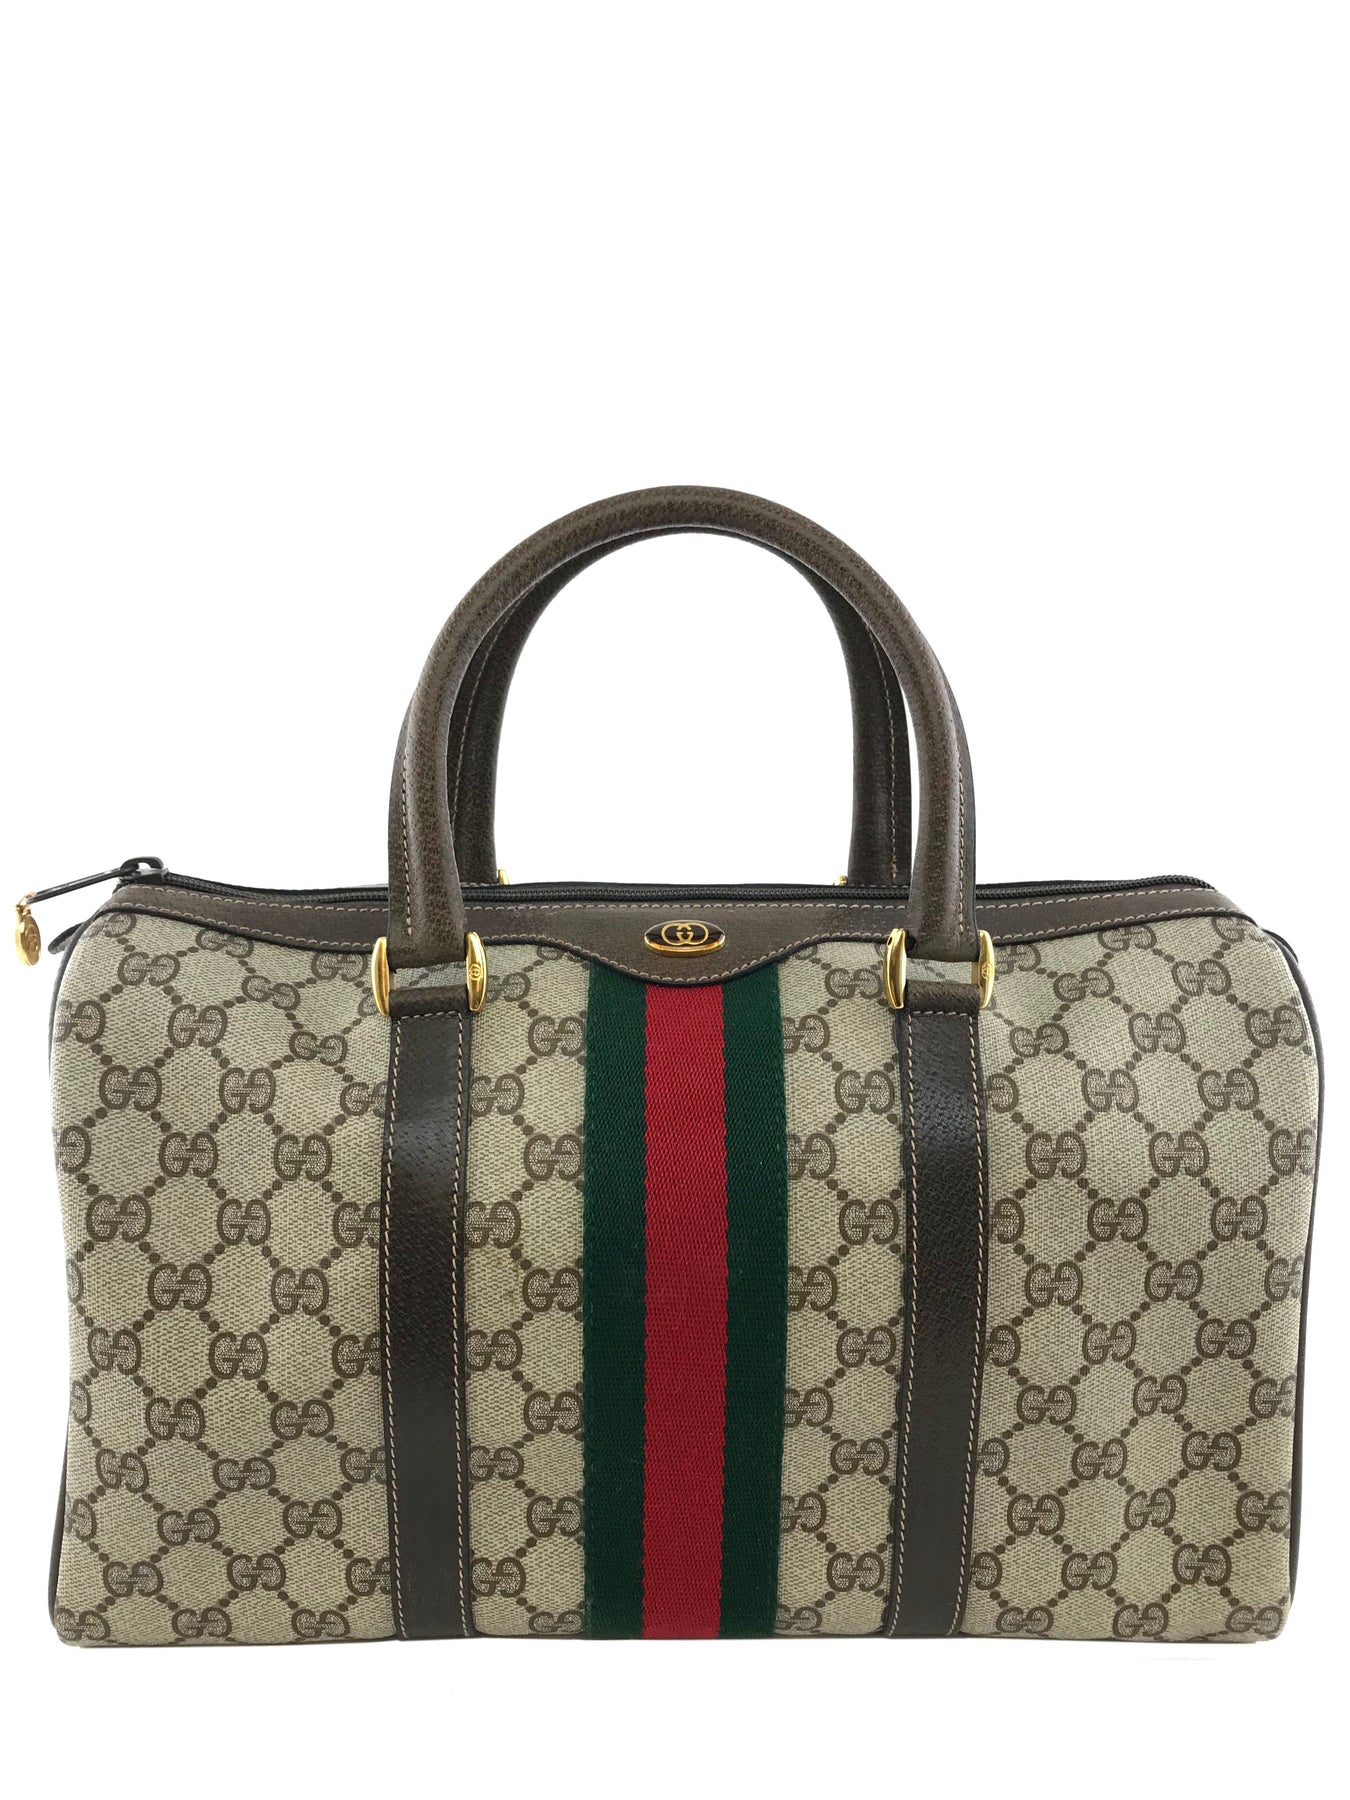 Gucci Monogram Boston Web Medium Satchel Bag - Consigned Designs